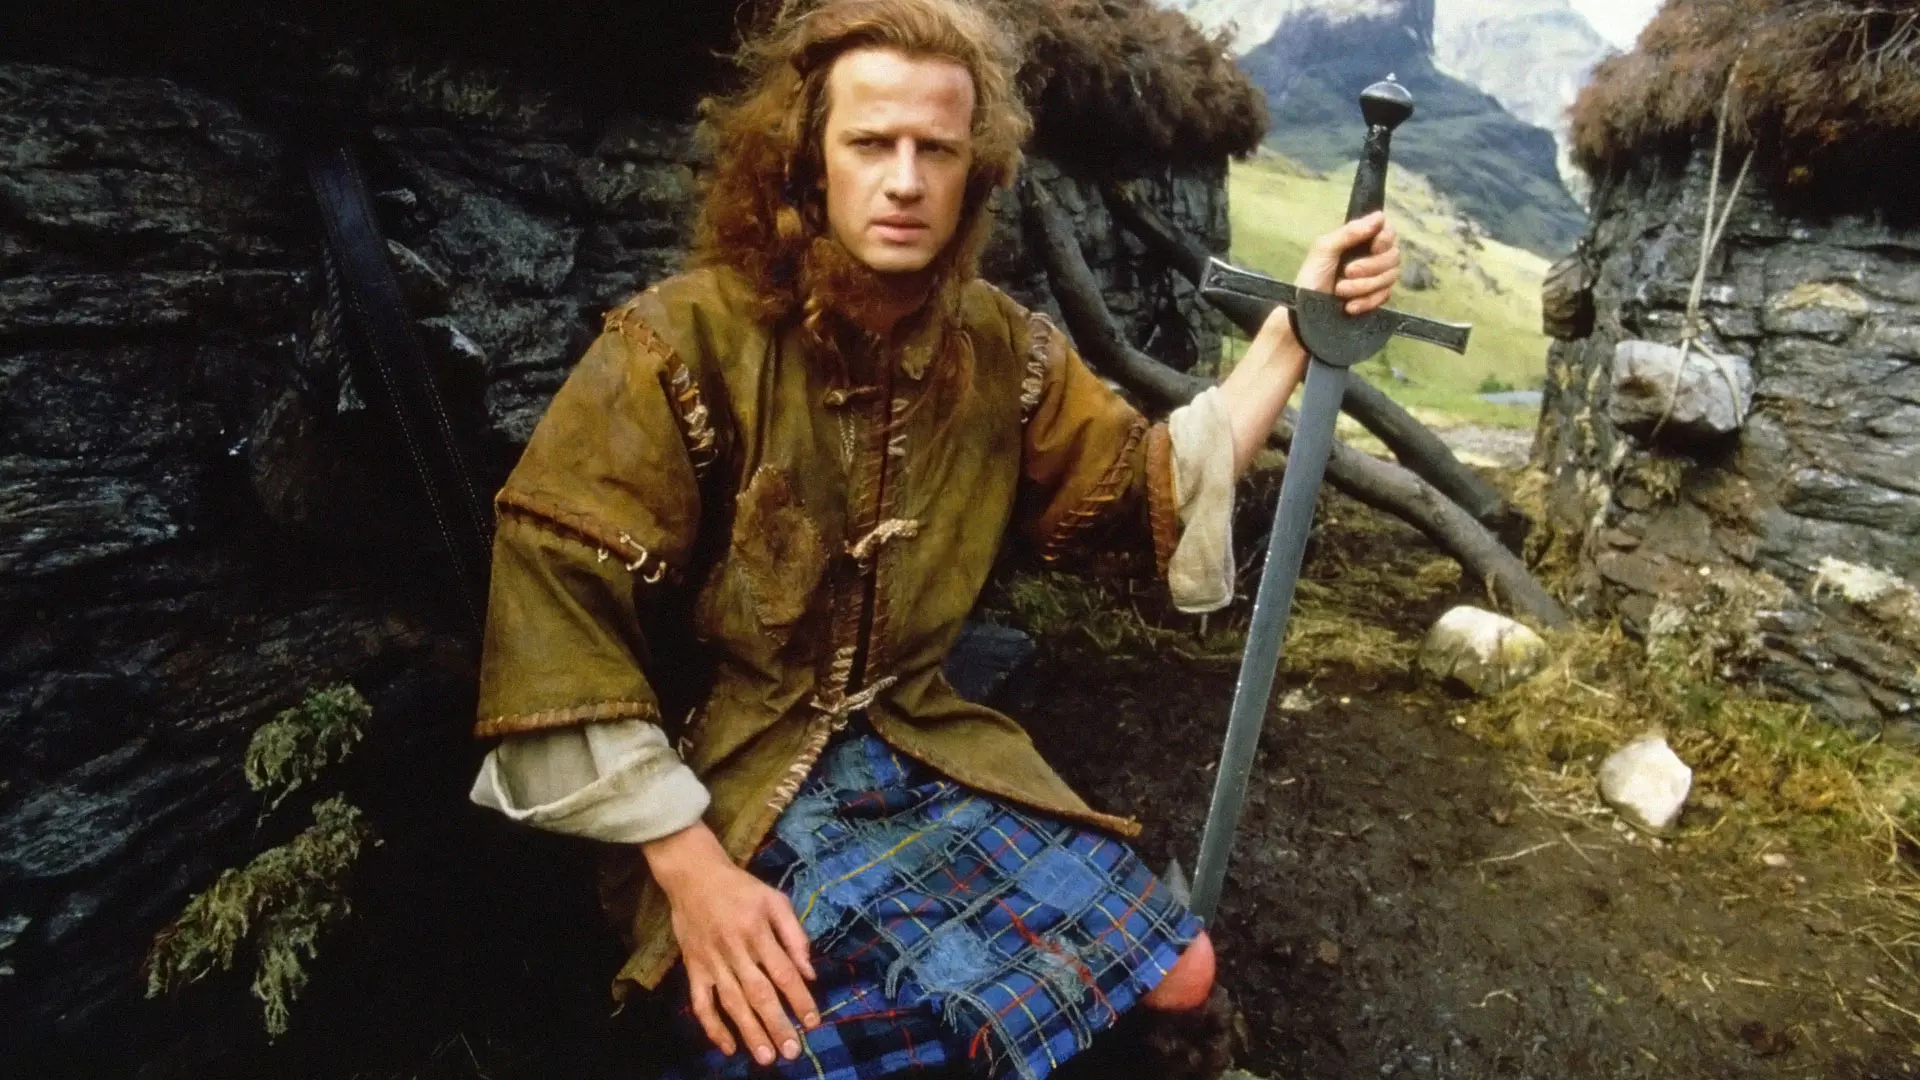 آدام لمبرت نشسته با شمشیری در دست در فیلم کوه نشین